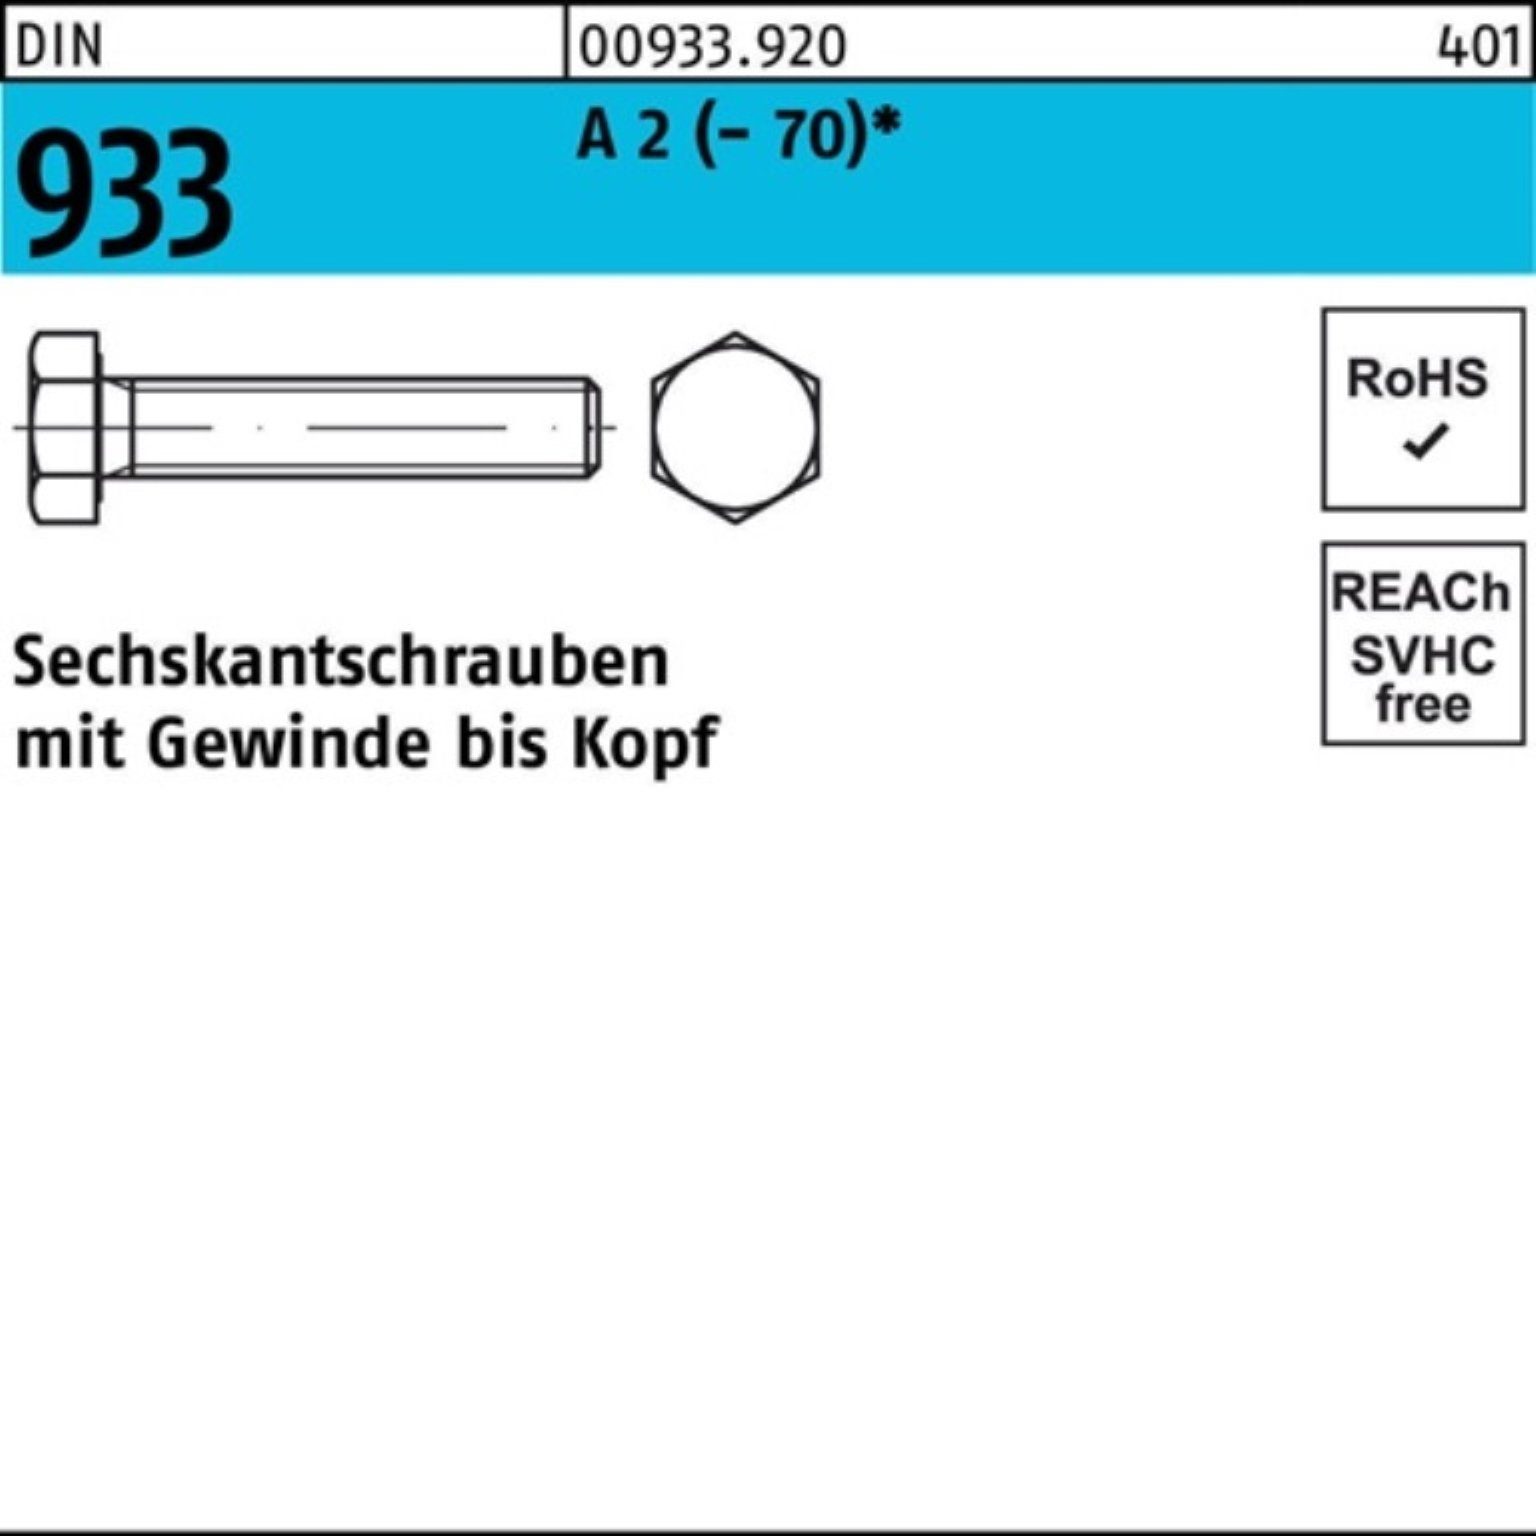 Reyher Sechskantschraube 100er Pack (70) 933 Stück M20x A DIN VG 150 Sechskantschraube 2 10